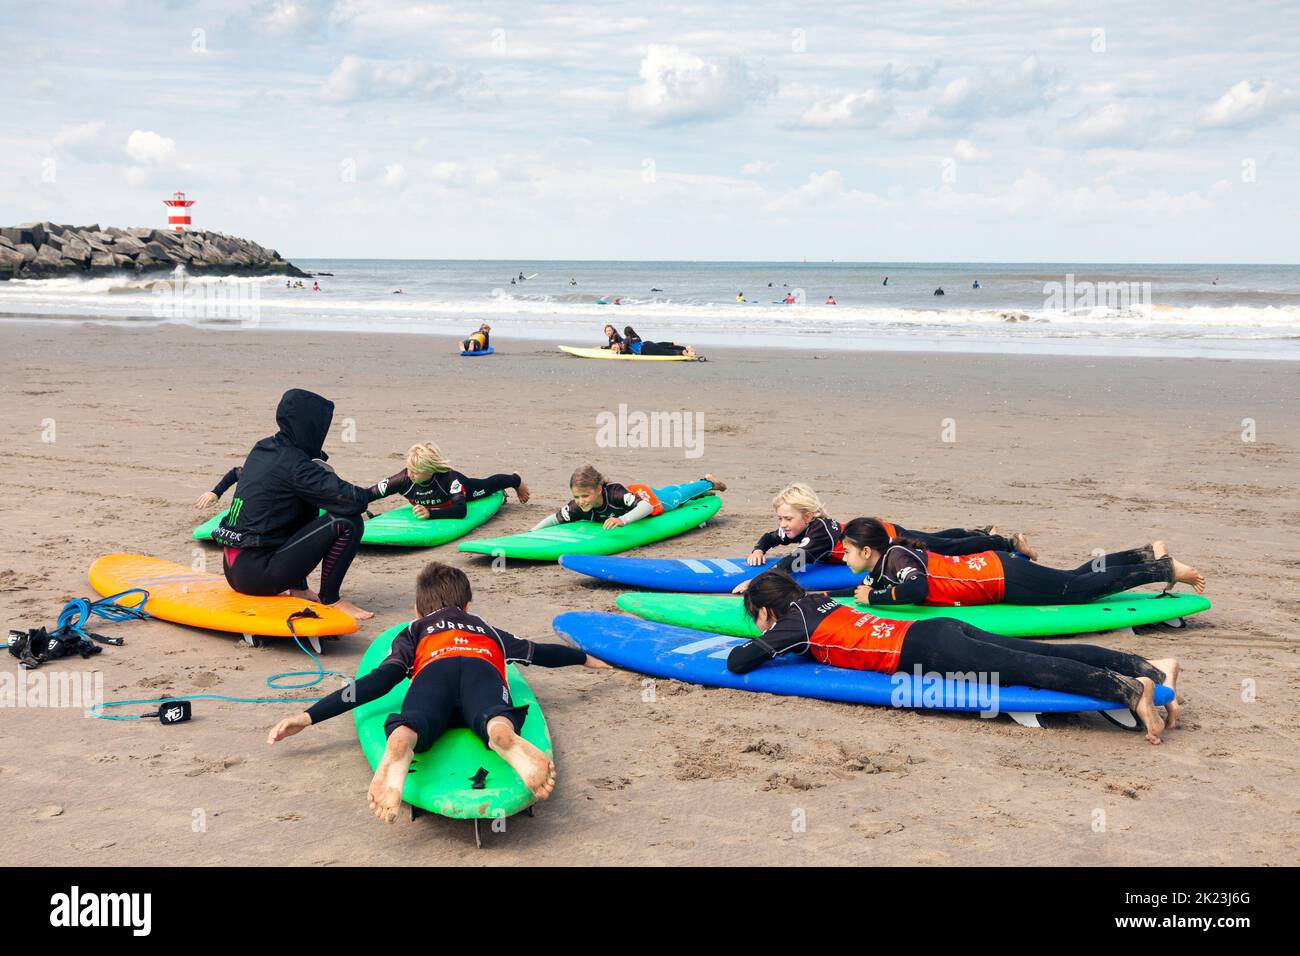 Scheveningen, Netherlands - 26 August, 2018: Group of children lying on surfboards during surfing training on the beach in Scheveningen, The Netherlan Stock Photo